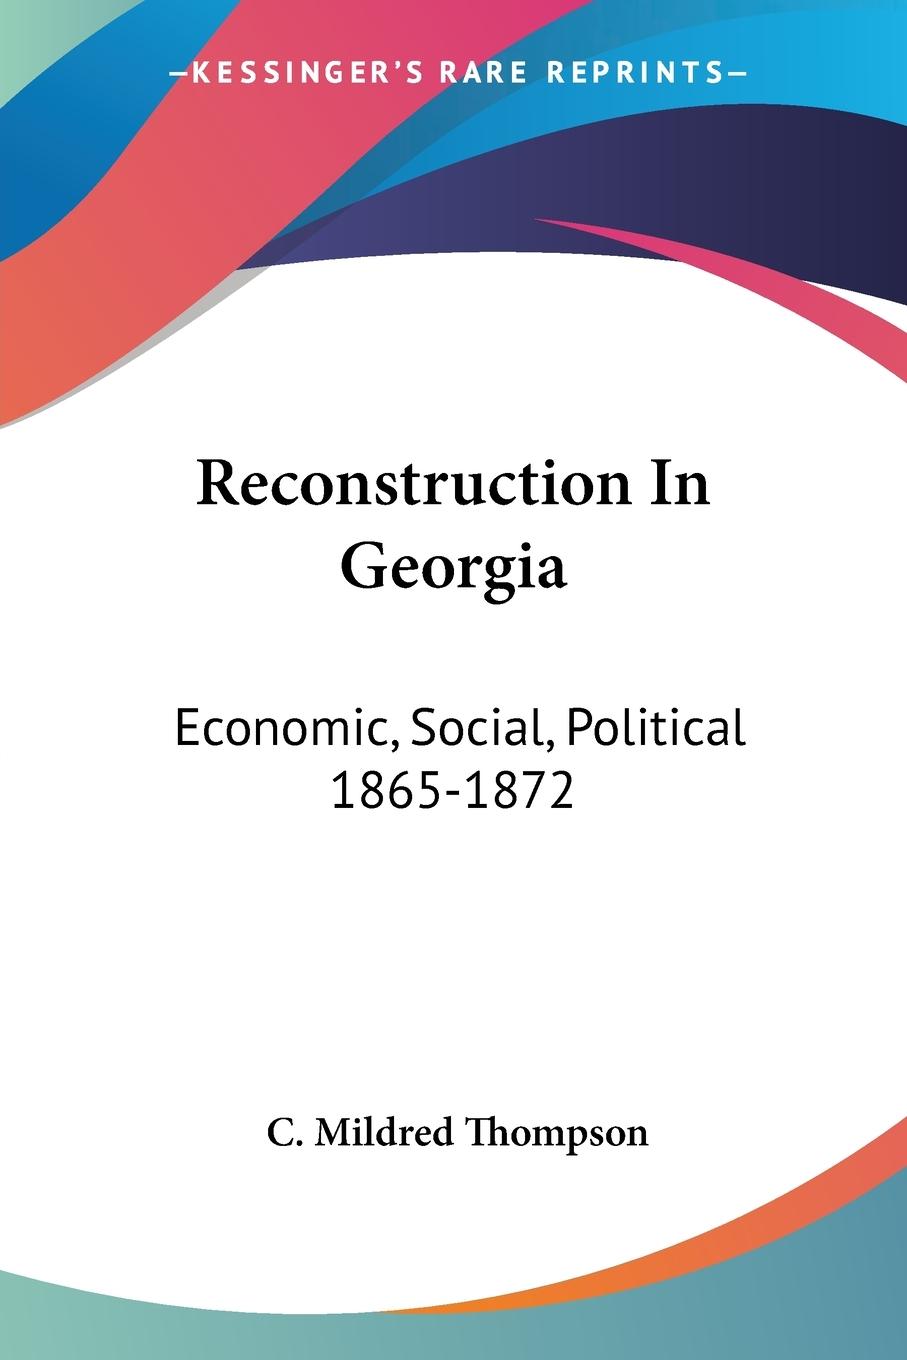 Reconstruction In Georgia - Thompson, C. Mildred